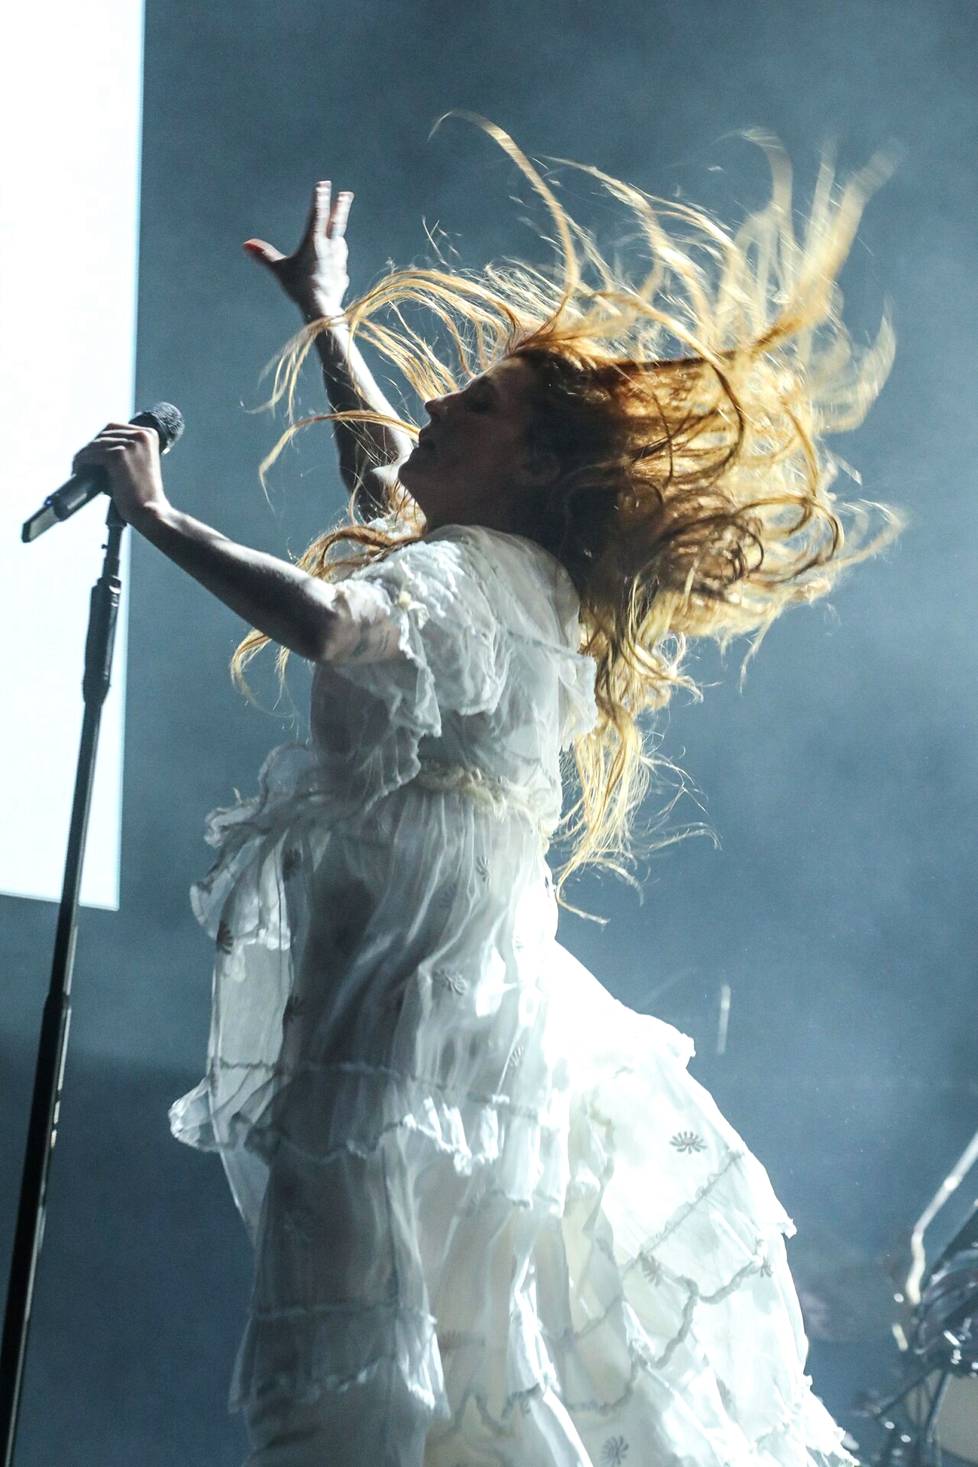 Flow -festivaali järjestettiin koronatauon jälkeen. Florence + The Machine oli lauantain energinen pääesiintyjä.